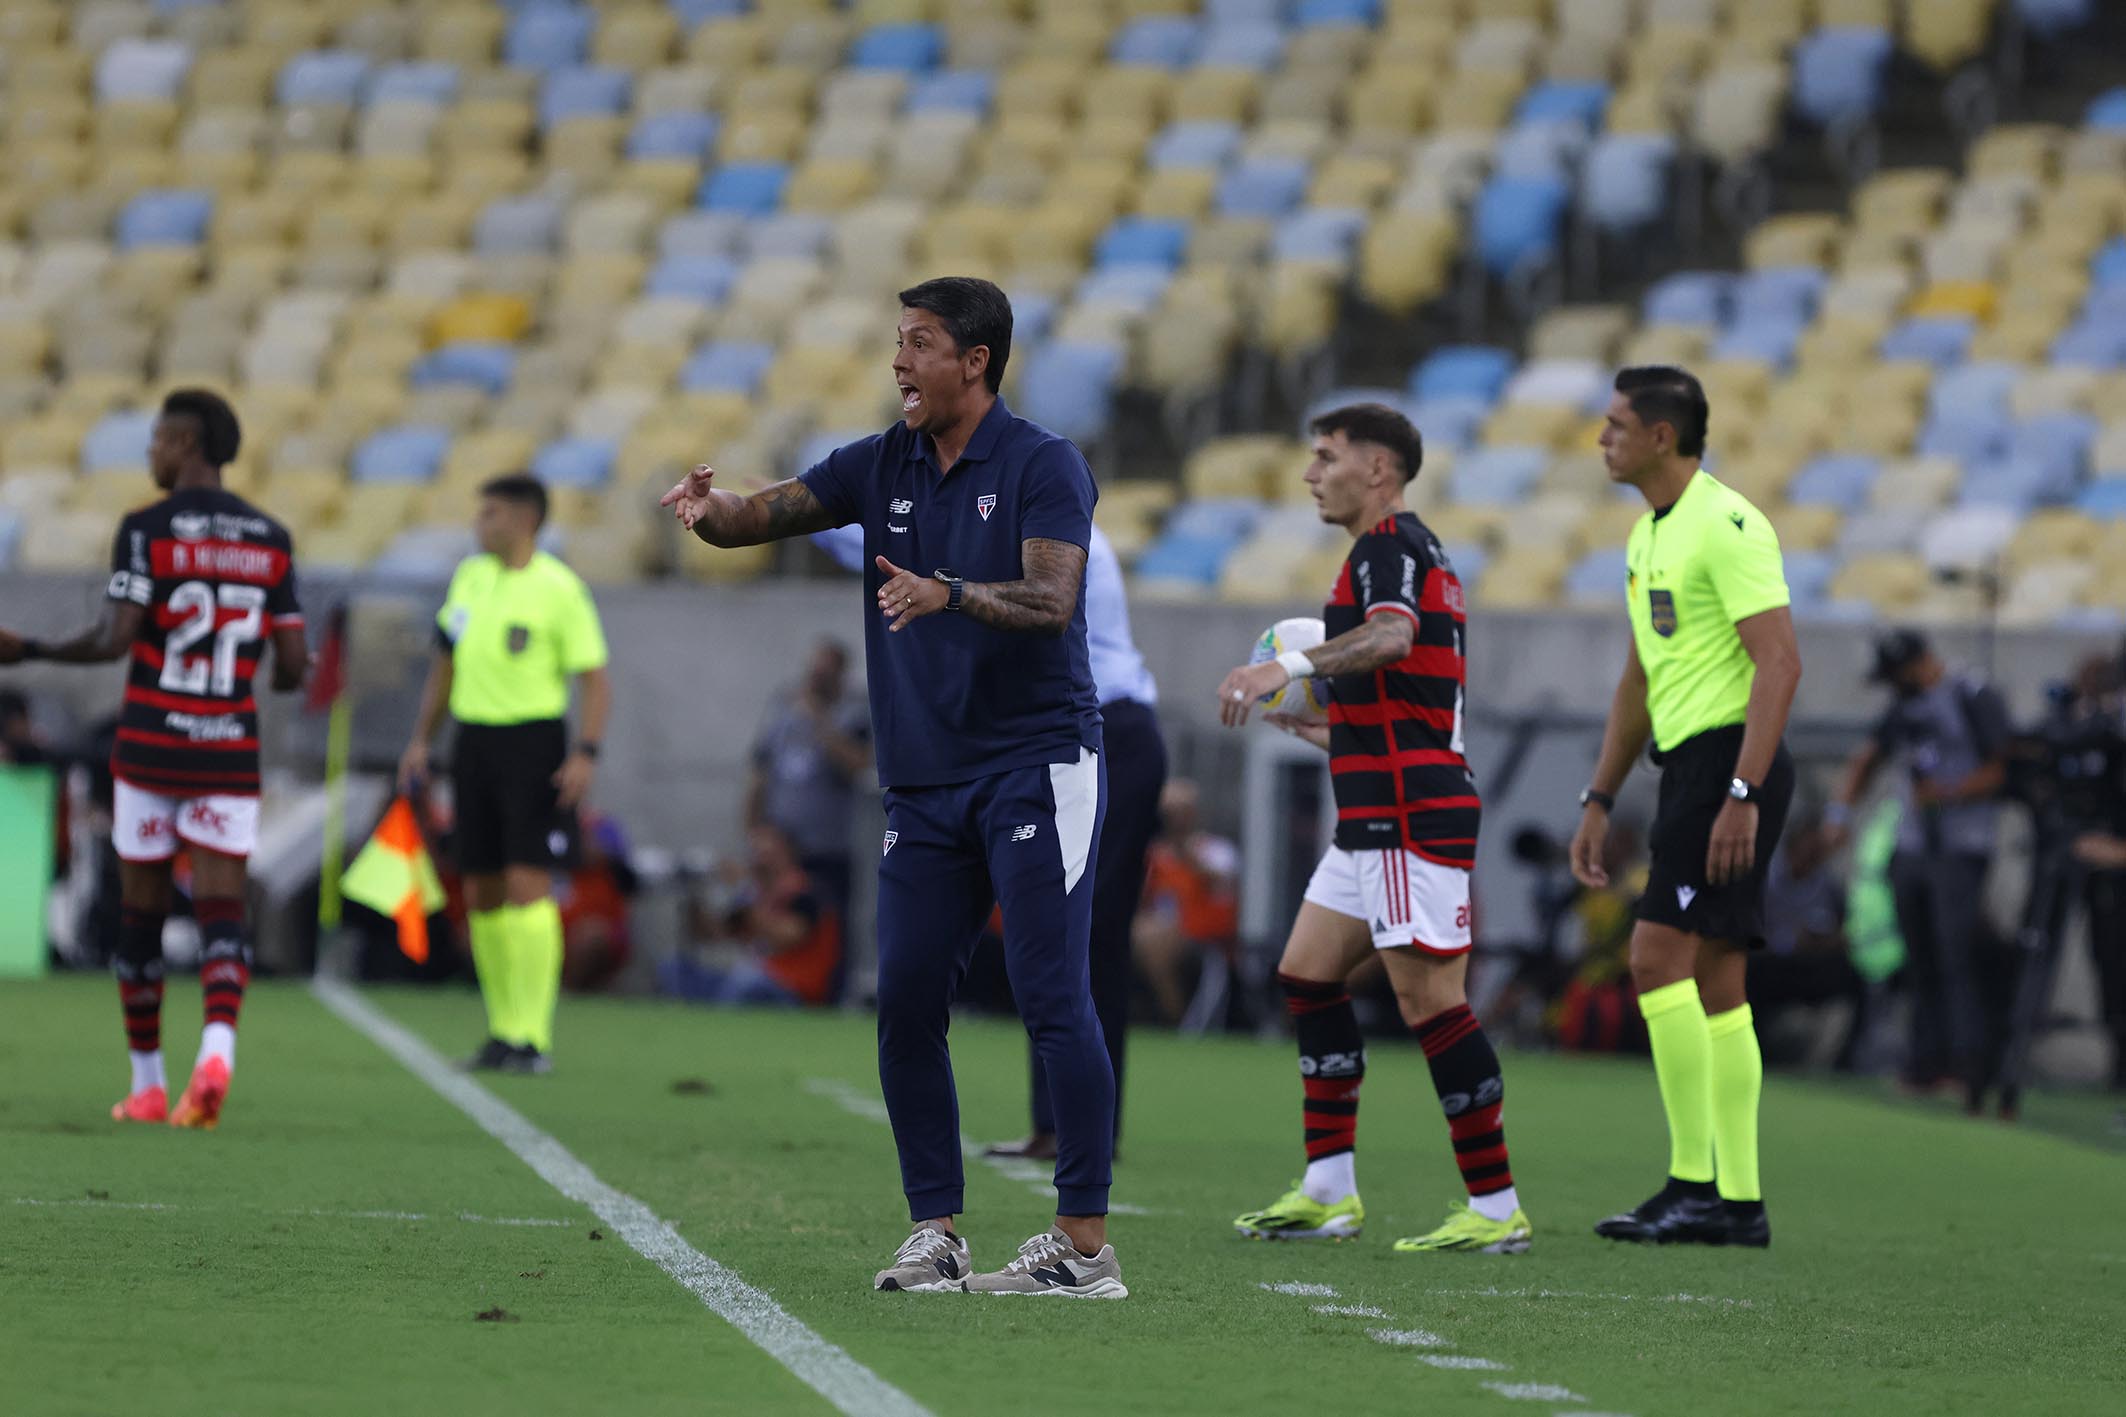 Treinador não resistiu a pressão por resultados e deixa o comando do clube. Tricolor Paulista foi derrotado nas duas primeiras partidas do Campeonato Brasileiro